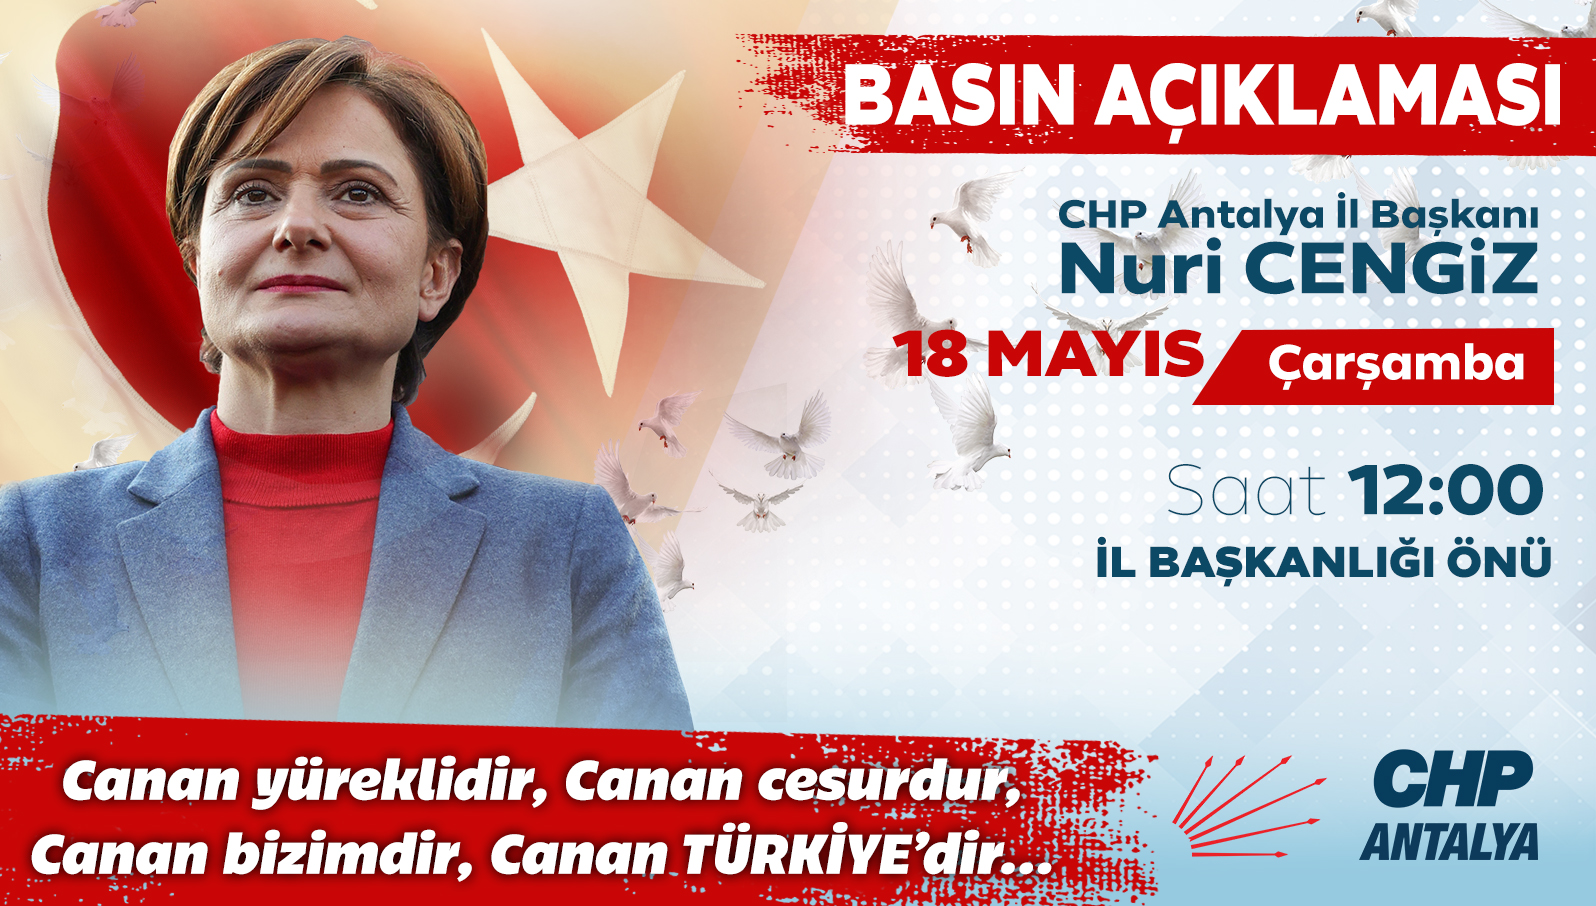 Yol arkadaşımız, CHP İstanbul İl Başkanımız Canan Kaftancıoğlu